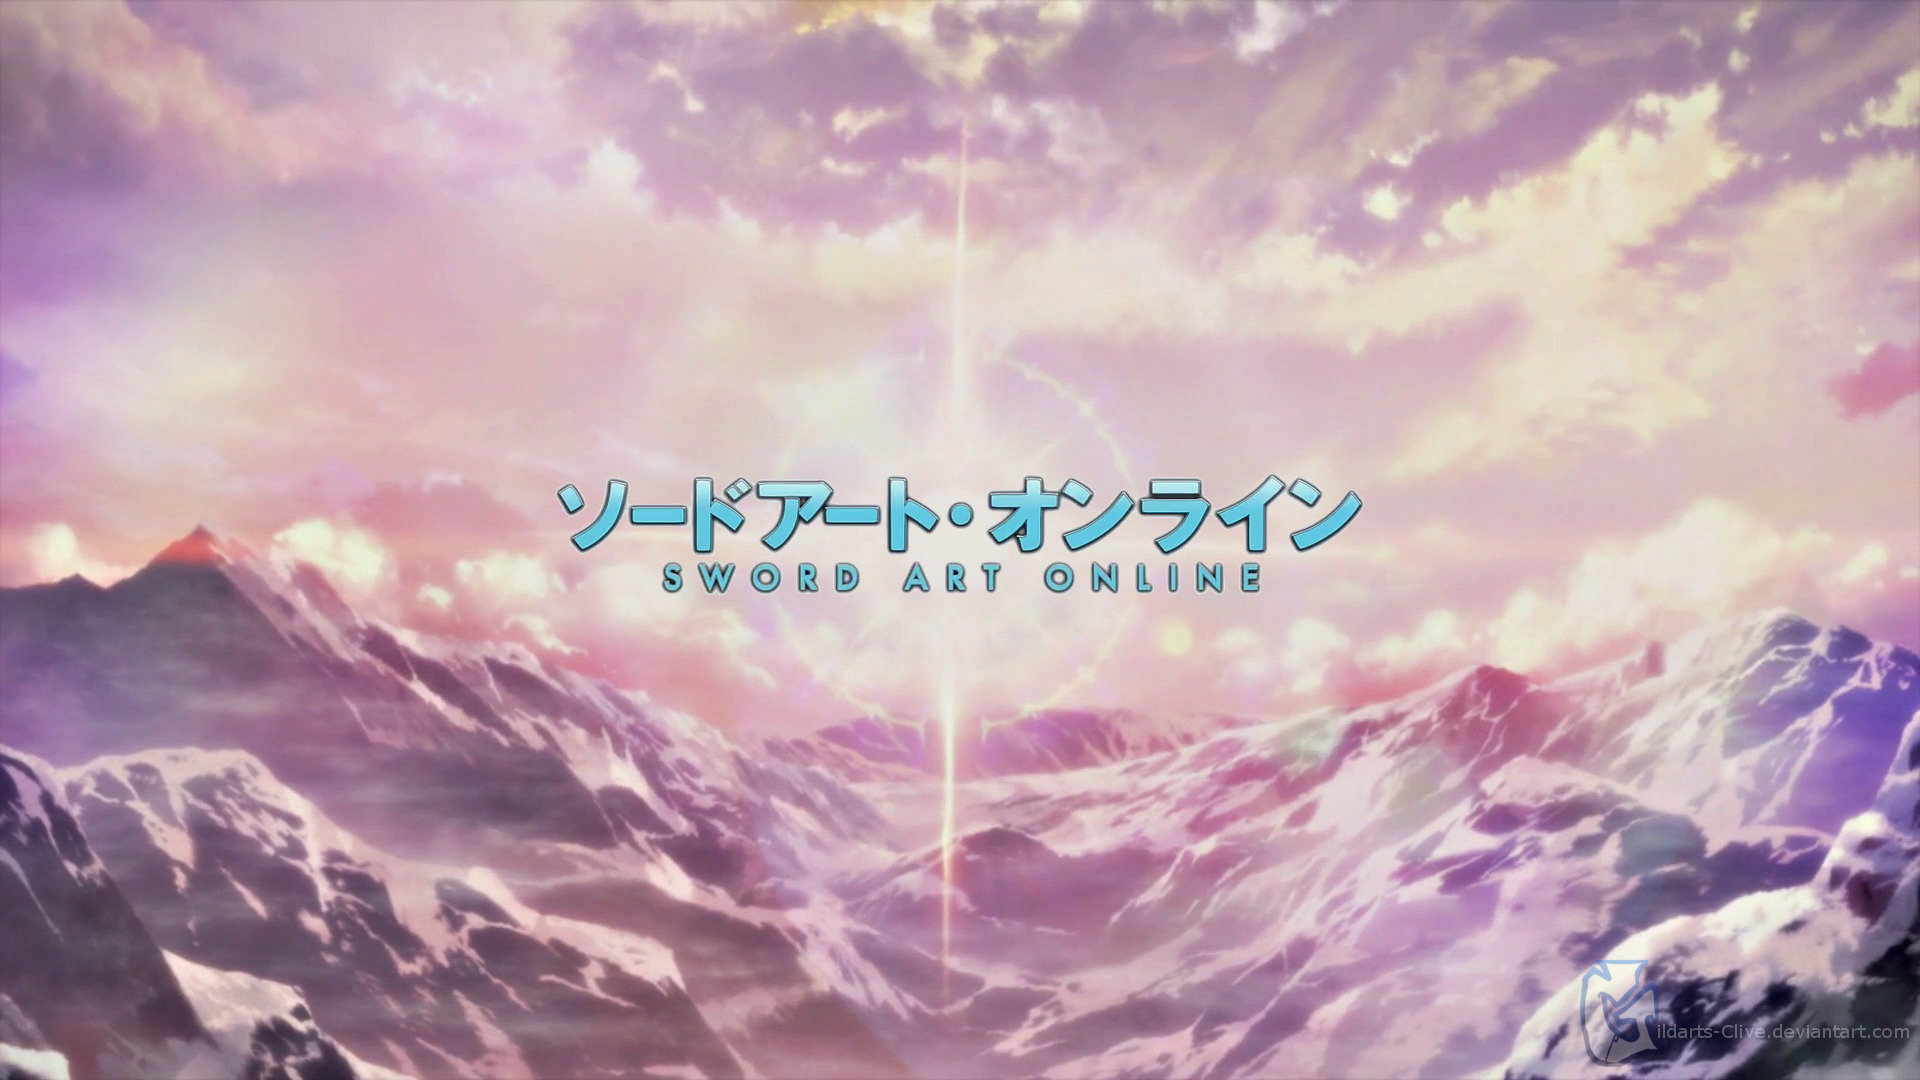 Sword Art Online, Logo, Landscape, Anime, Mountain Wallpaper